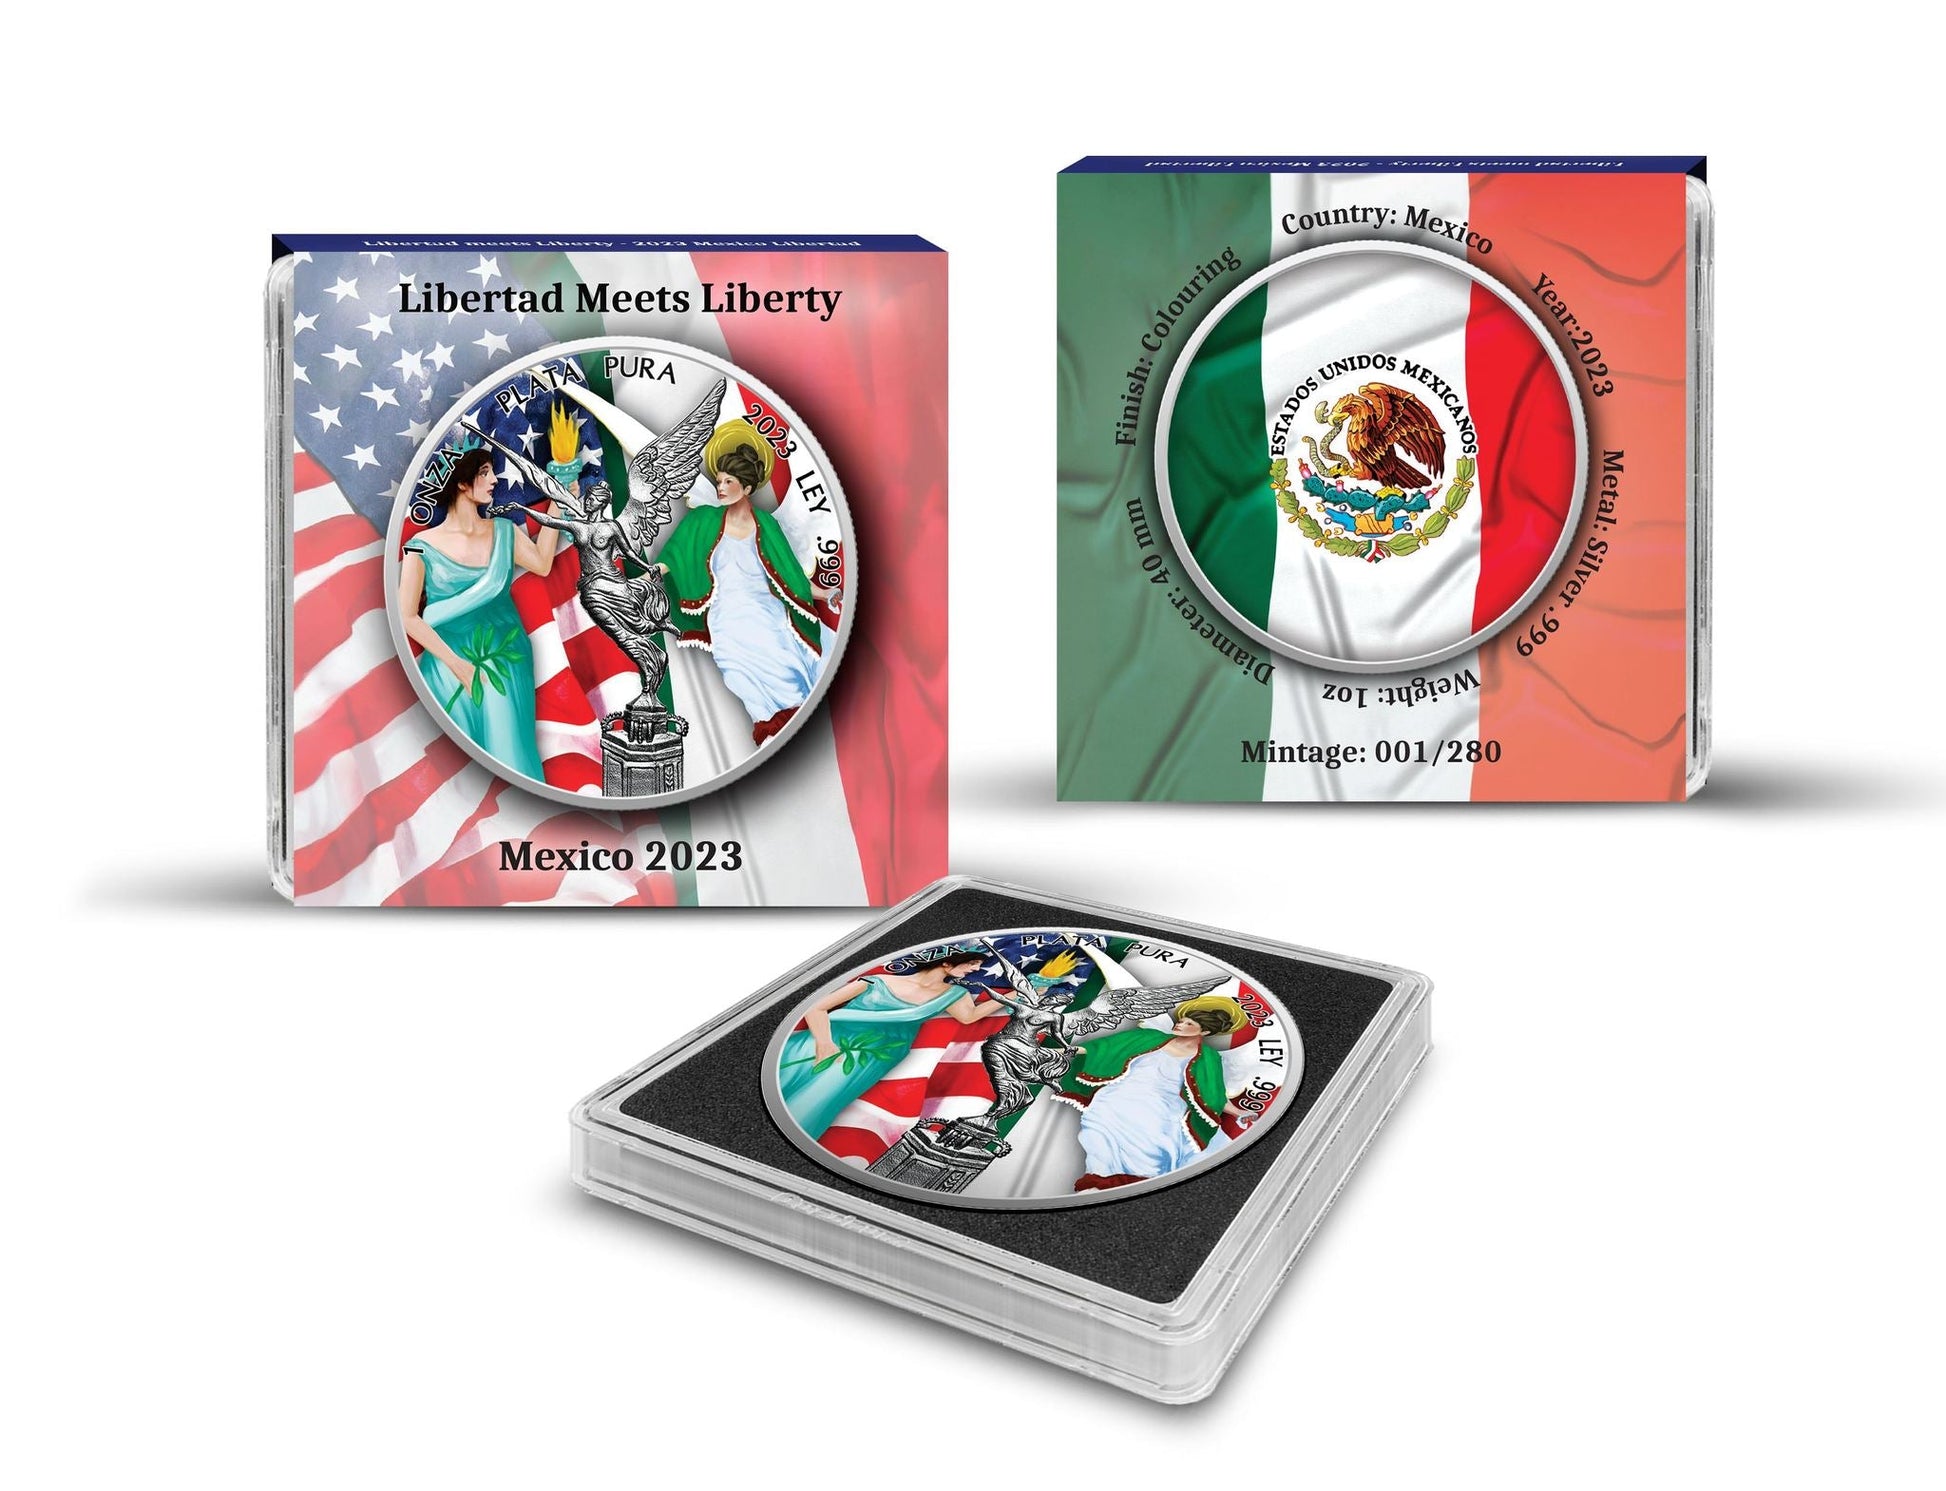 2023 Mexico Libertad Meets Liberty Edition 1 oz Silbermünze*